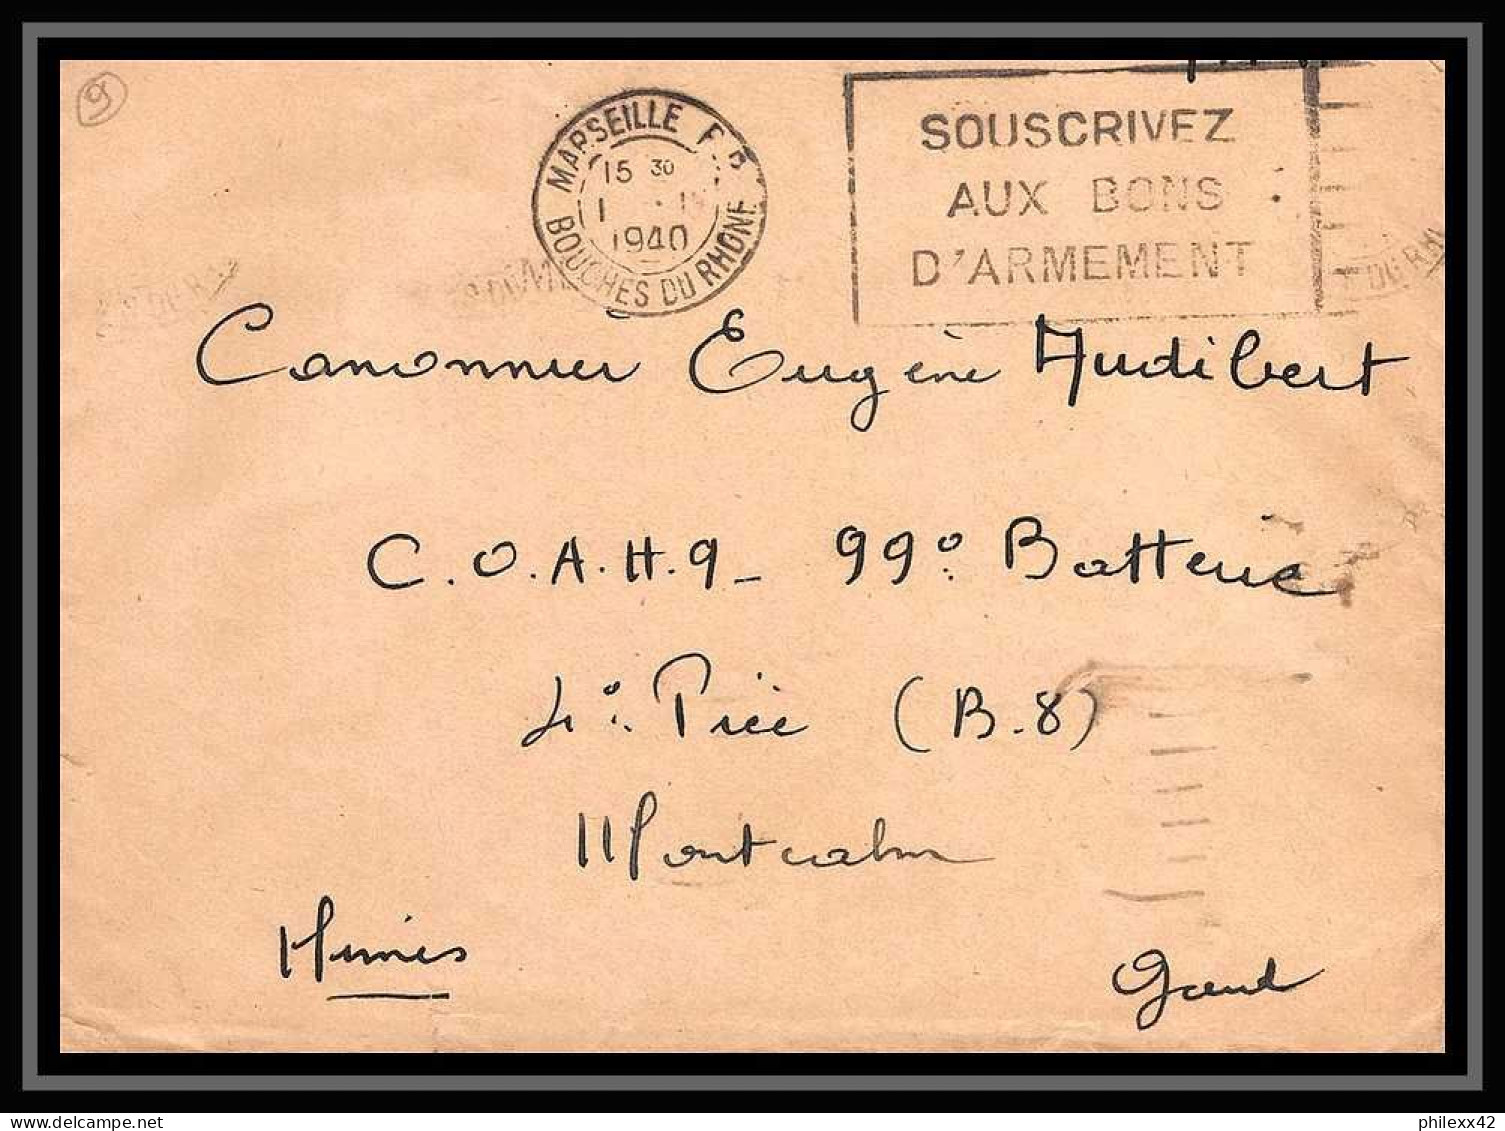 115769 LOT DE + DE 35 Lettres cover Bouches du rhone Marseille Flier secap guerre 1939/1945 affranchissements mécaniques